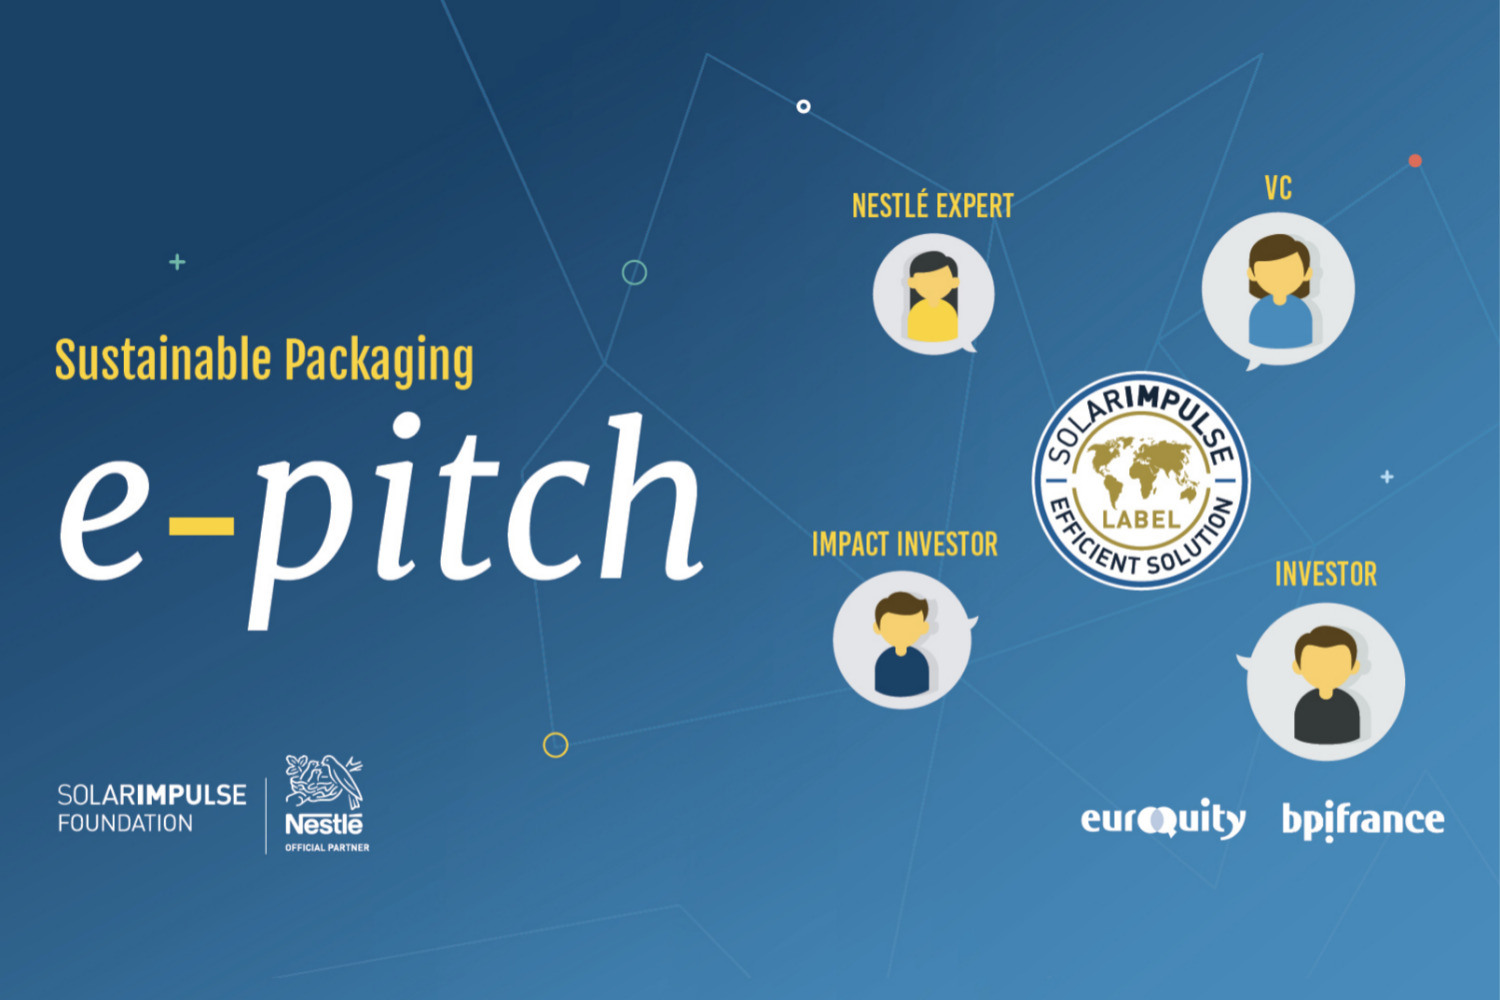 E-Pitch Solar Impulse Investment - "Imballaggio e nuovi materiali" - SIF x Nestlé